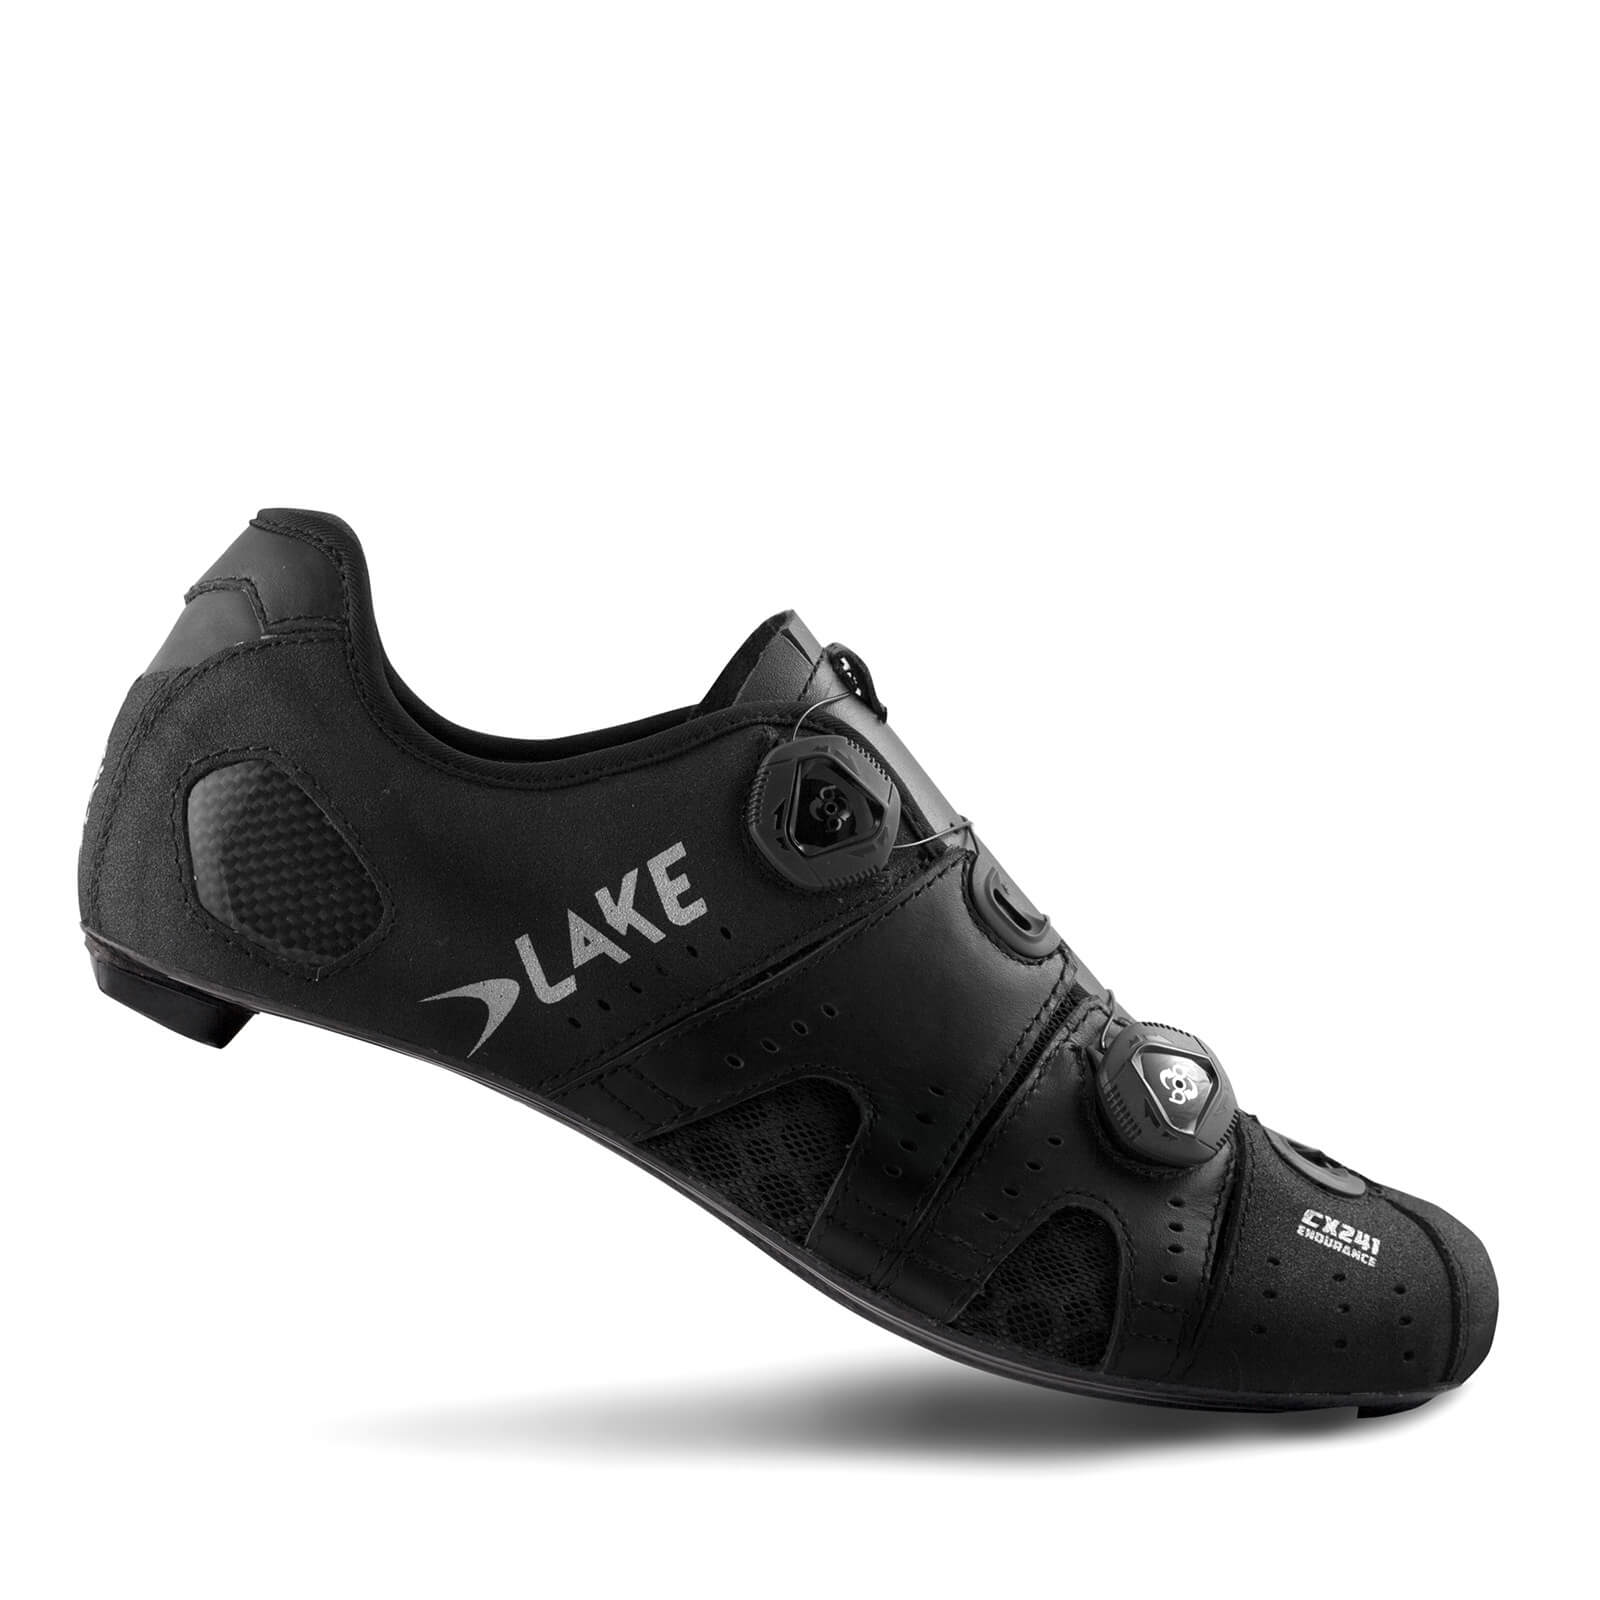 Lake CX241 Road Shoes - EU46 - Black